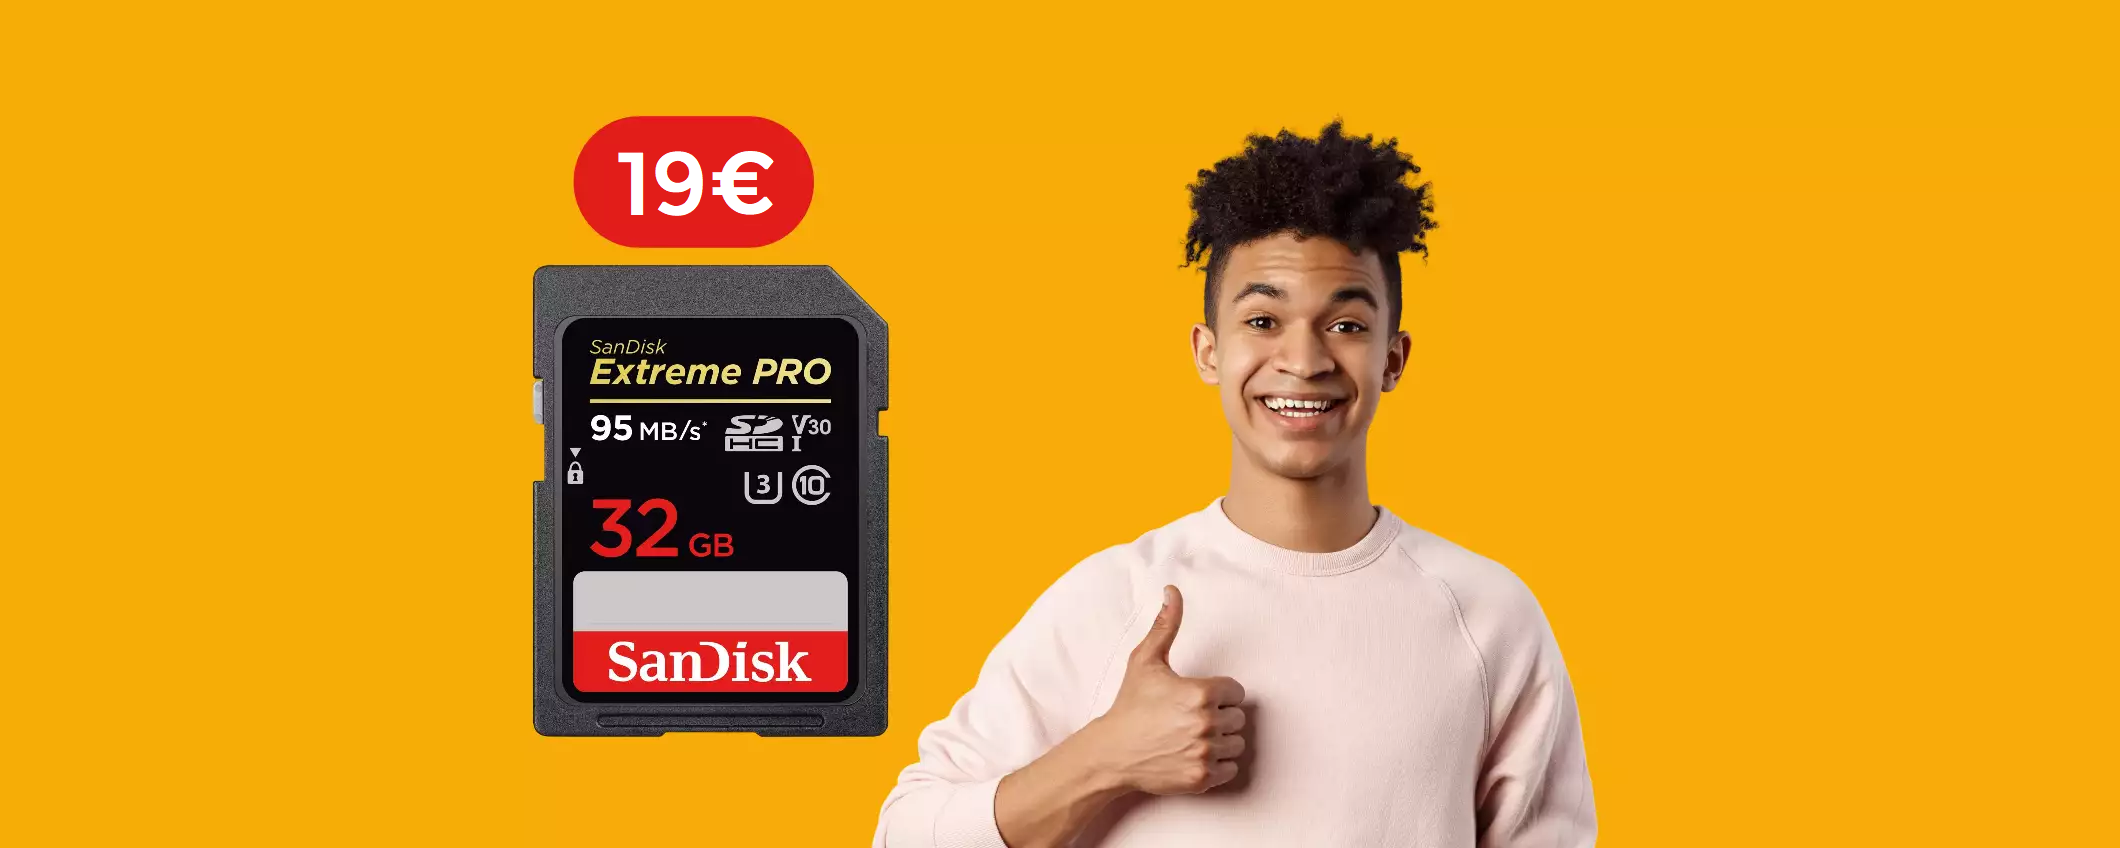 Scheda SD 32GB SanDisk: la più VELOCE che puoi acquistare con 19€